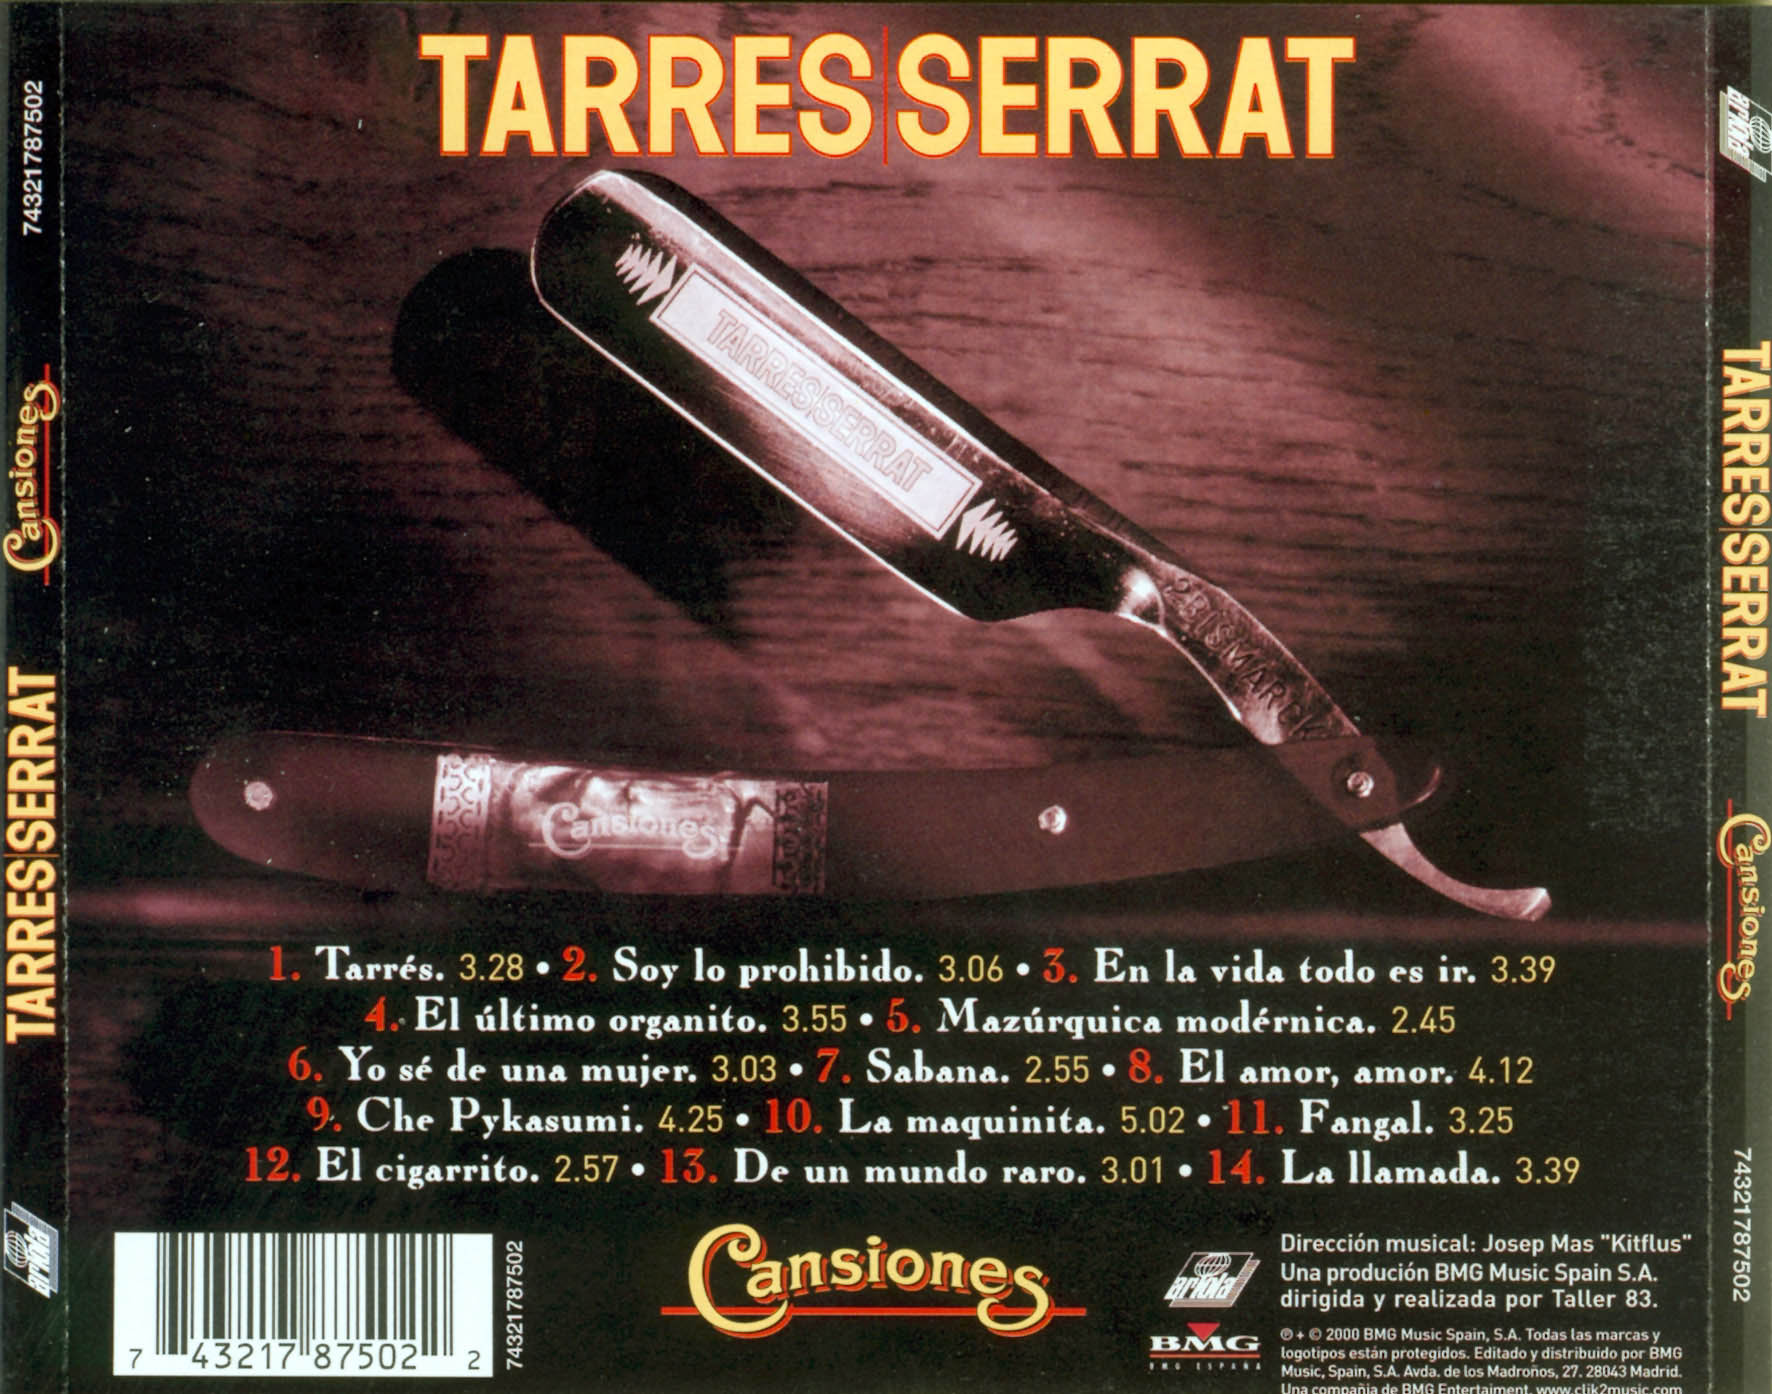 Cartula Trasera de Serrat - Cansiones